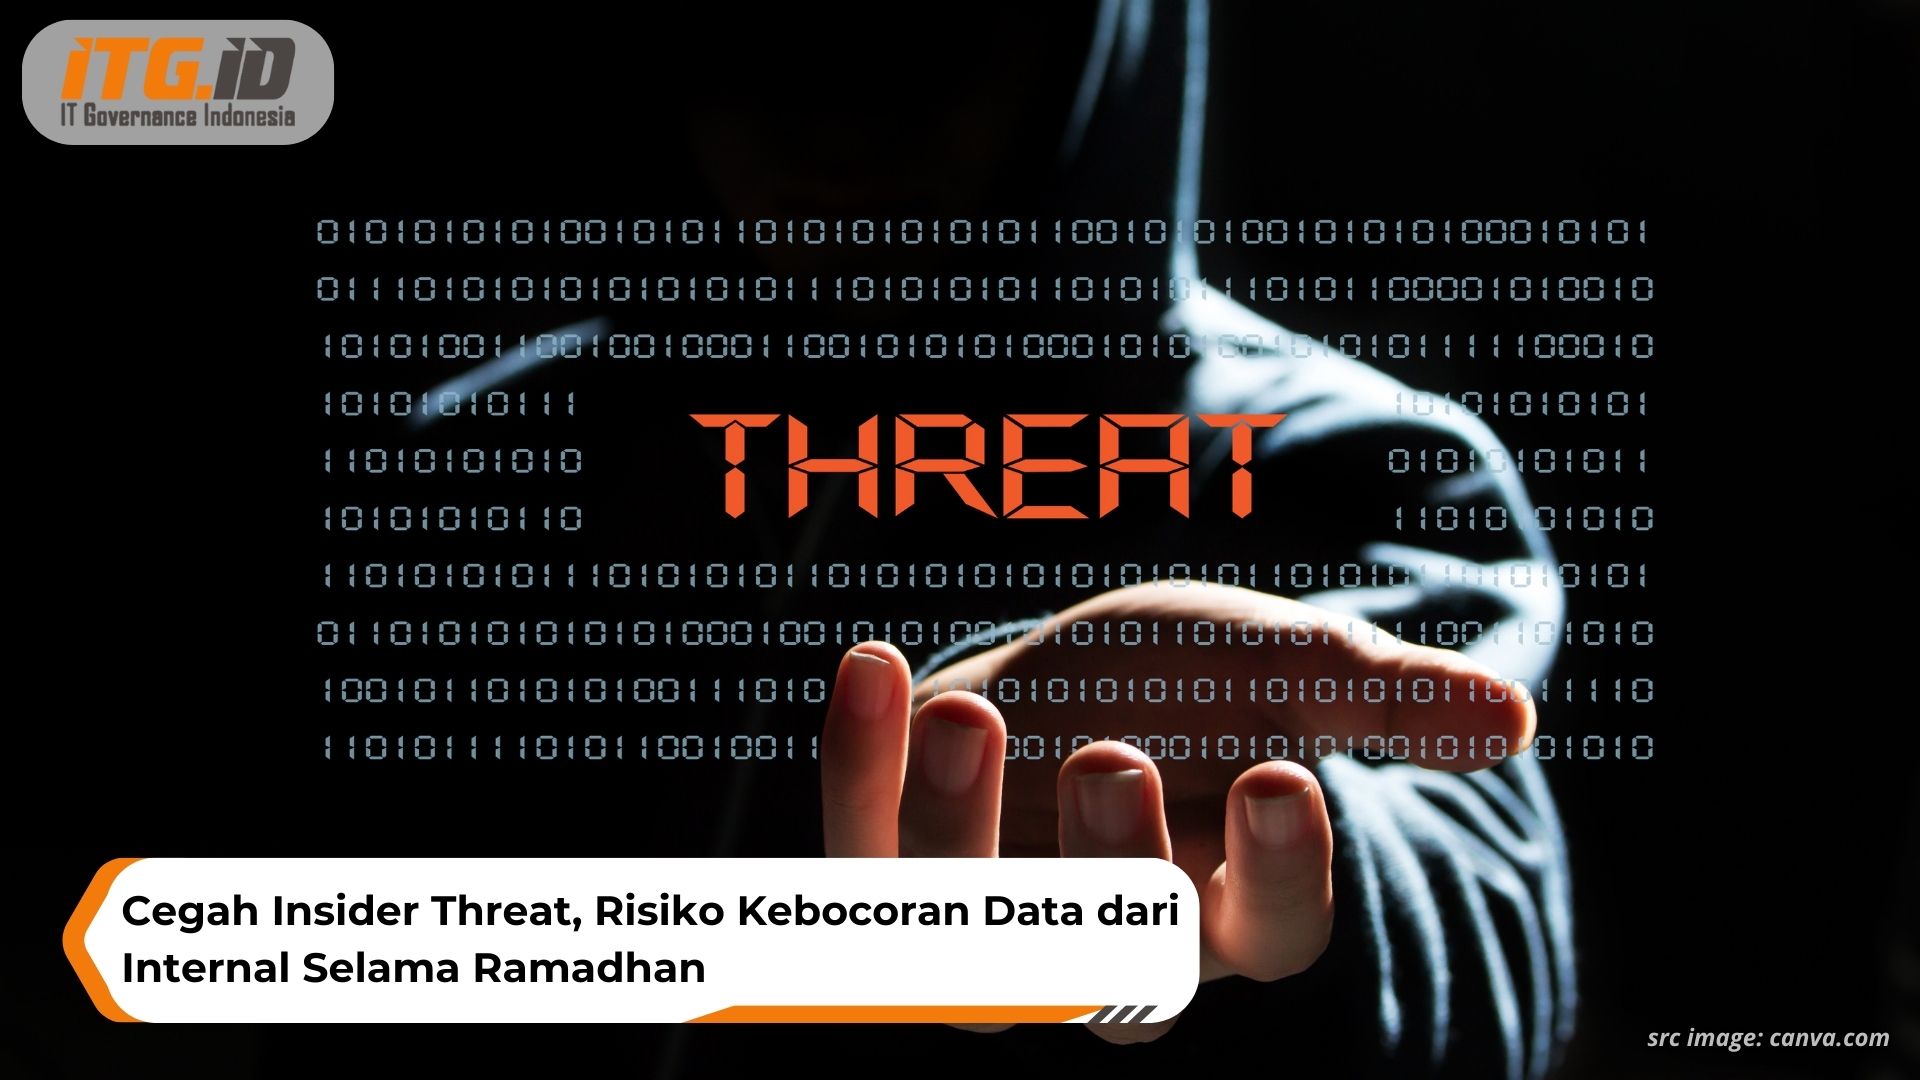 Cegah Insider Threat, Risiko Kebocoran Data dari Internal Selama Ramadhan